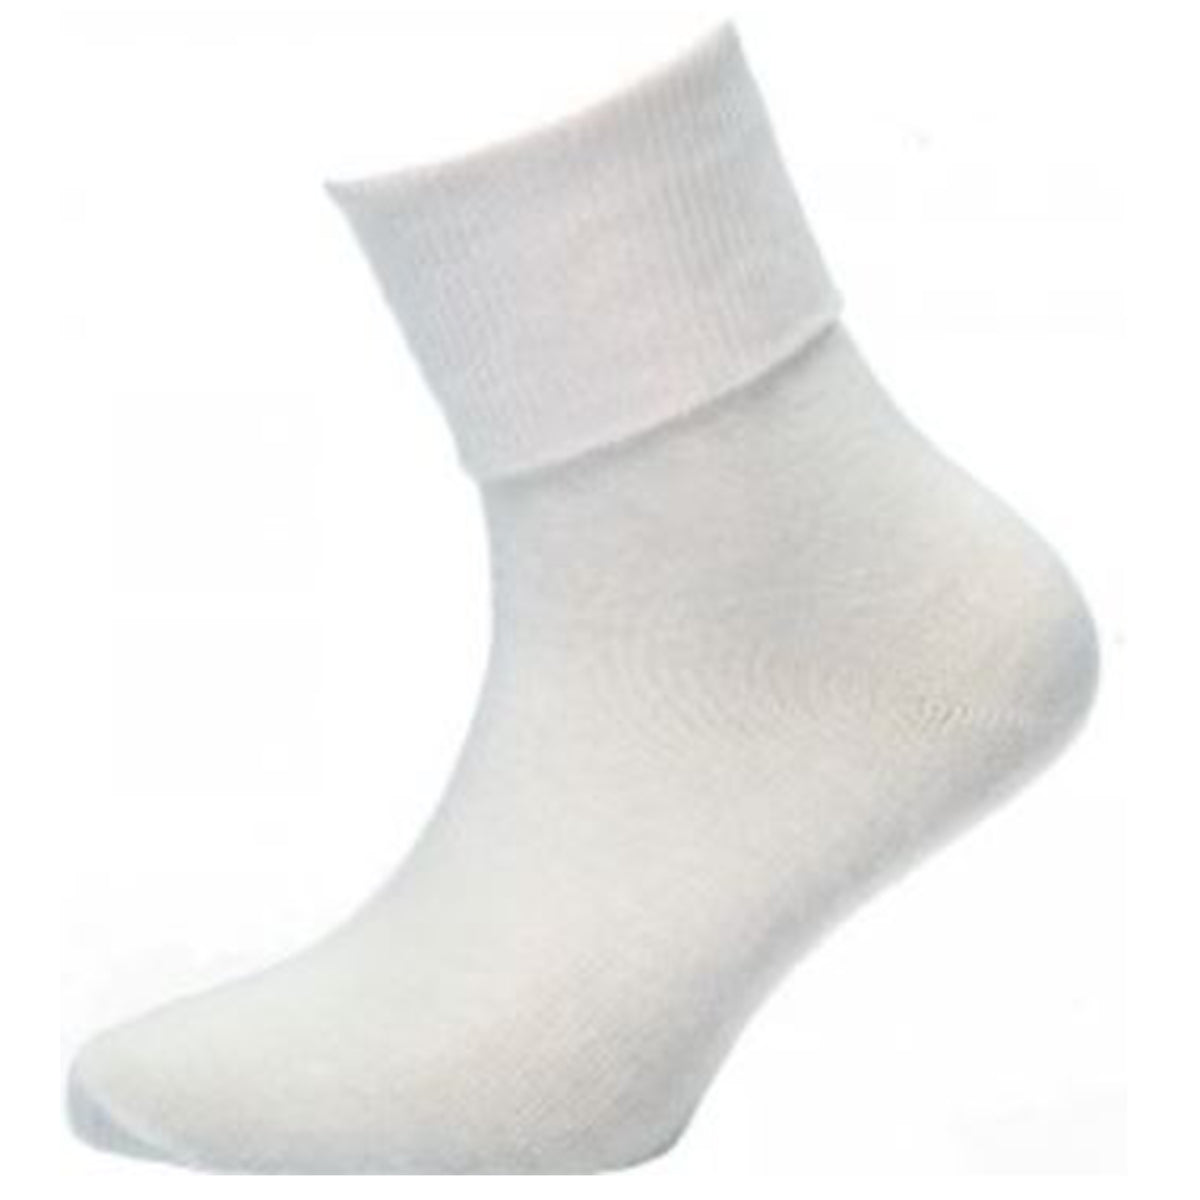 Socks Day Short: White 2pk